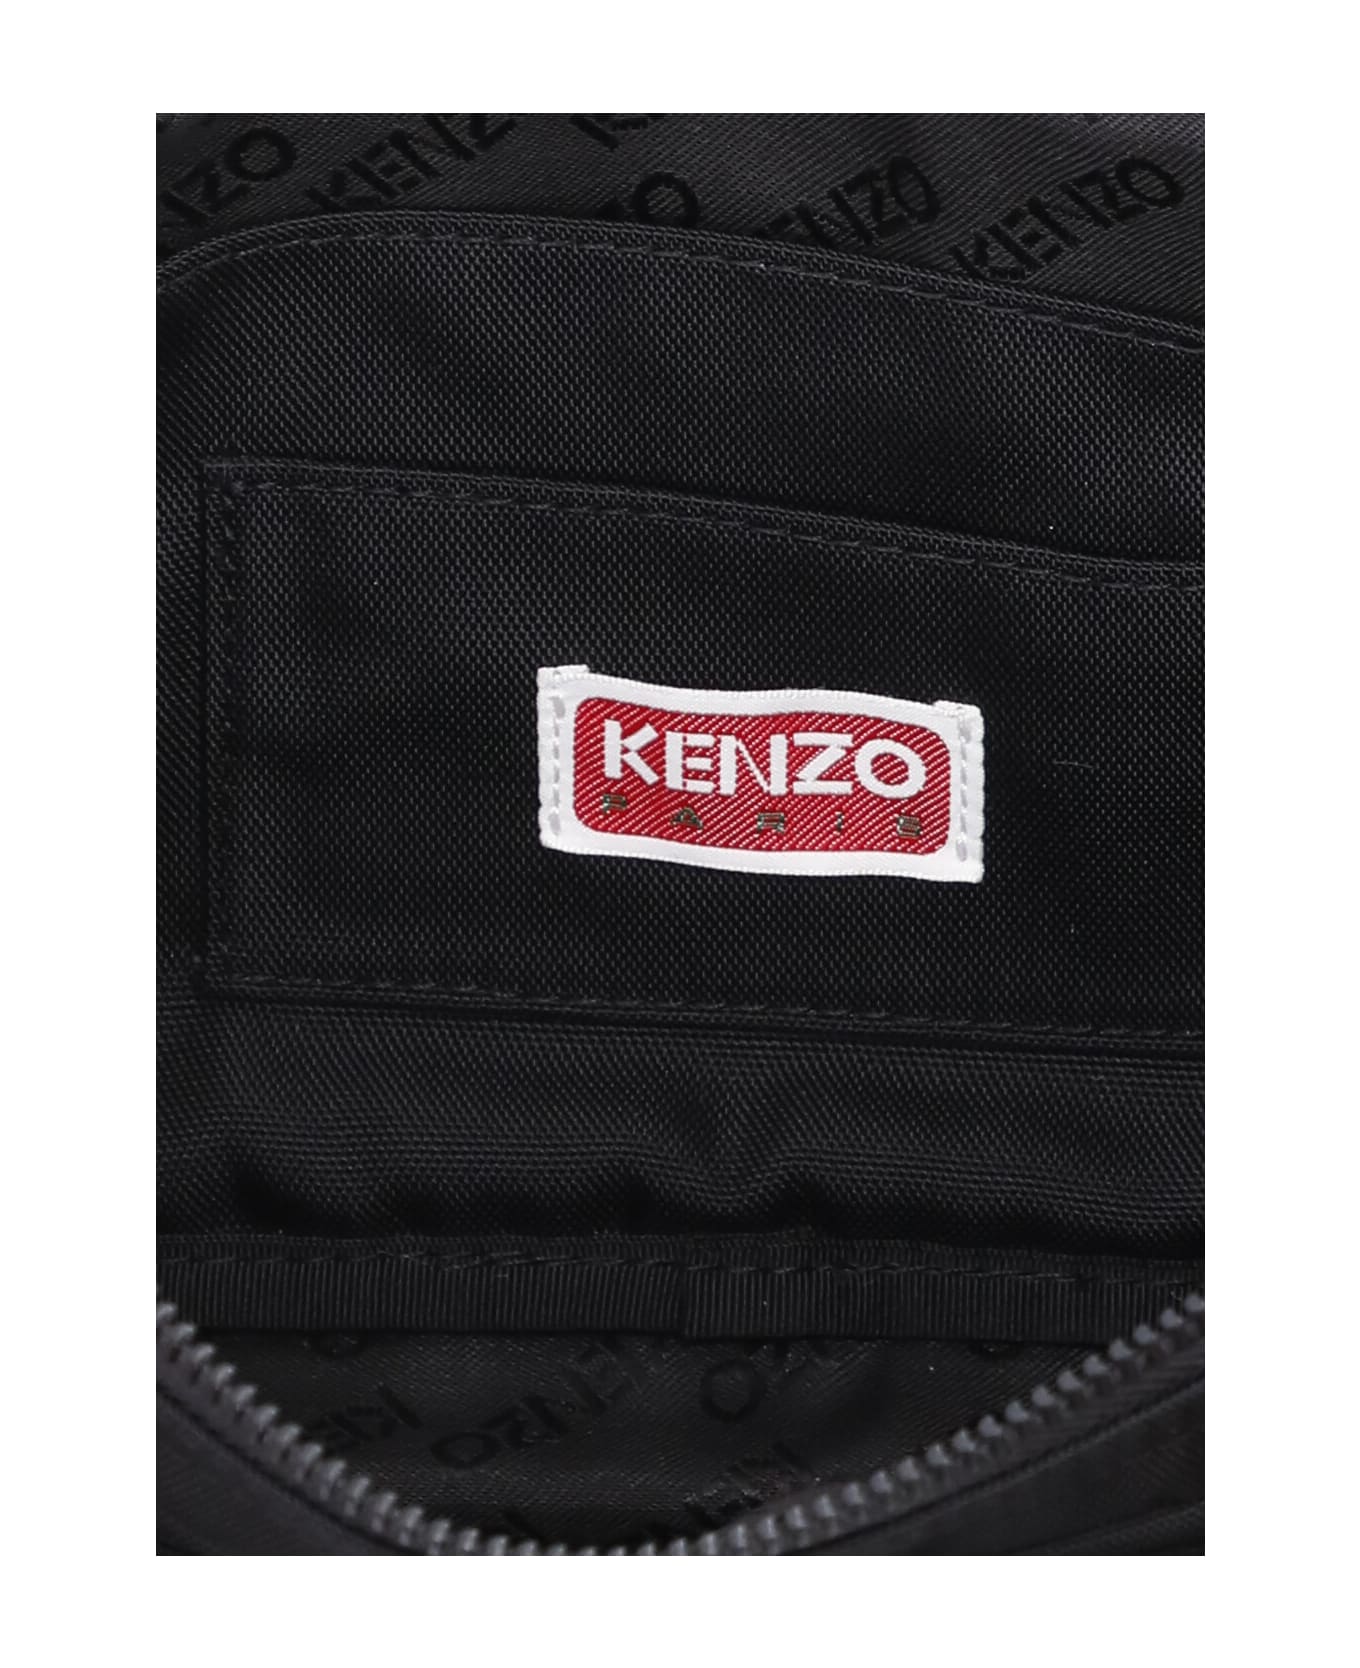 Kenzo Boke Flower Belt Bag - BLACK